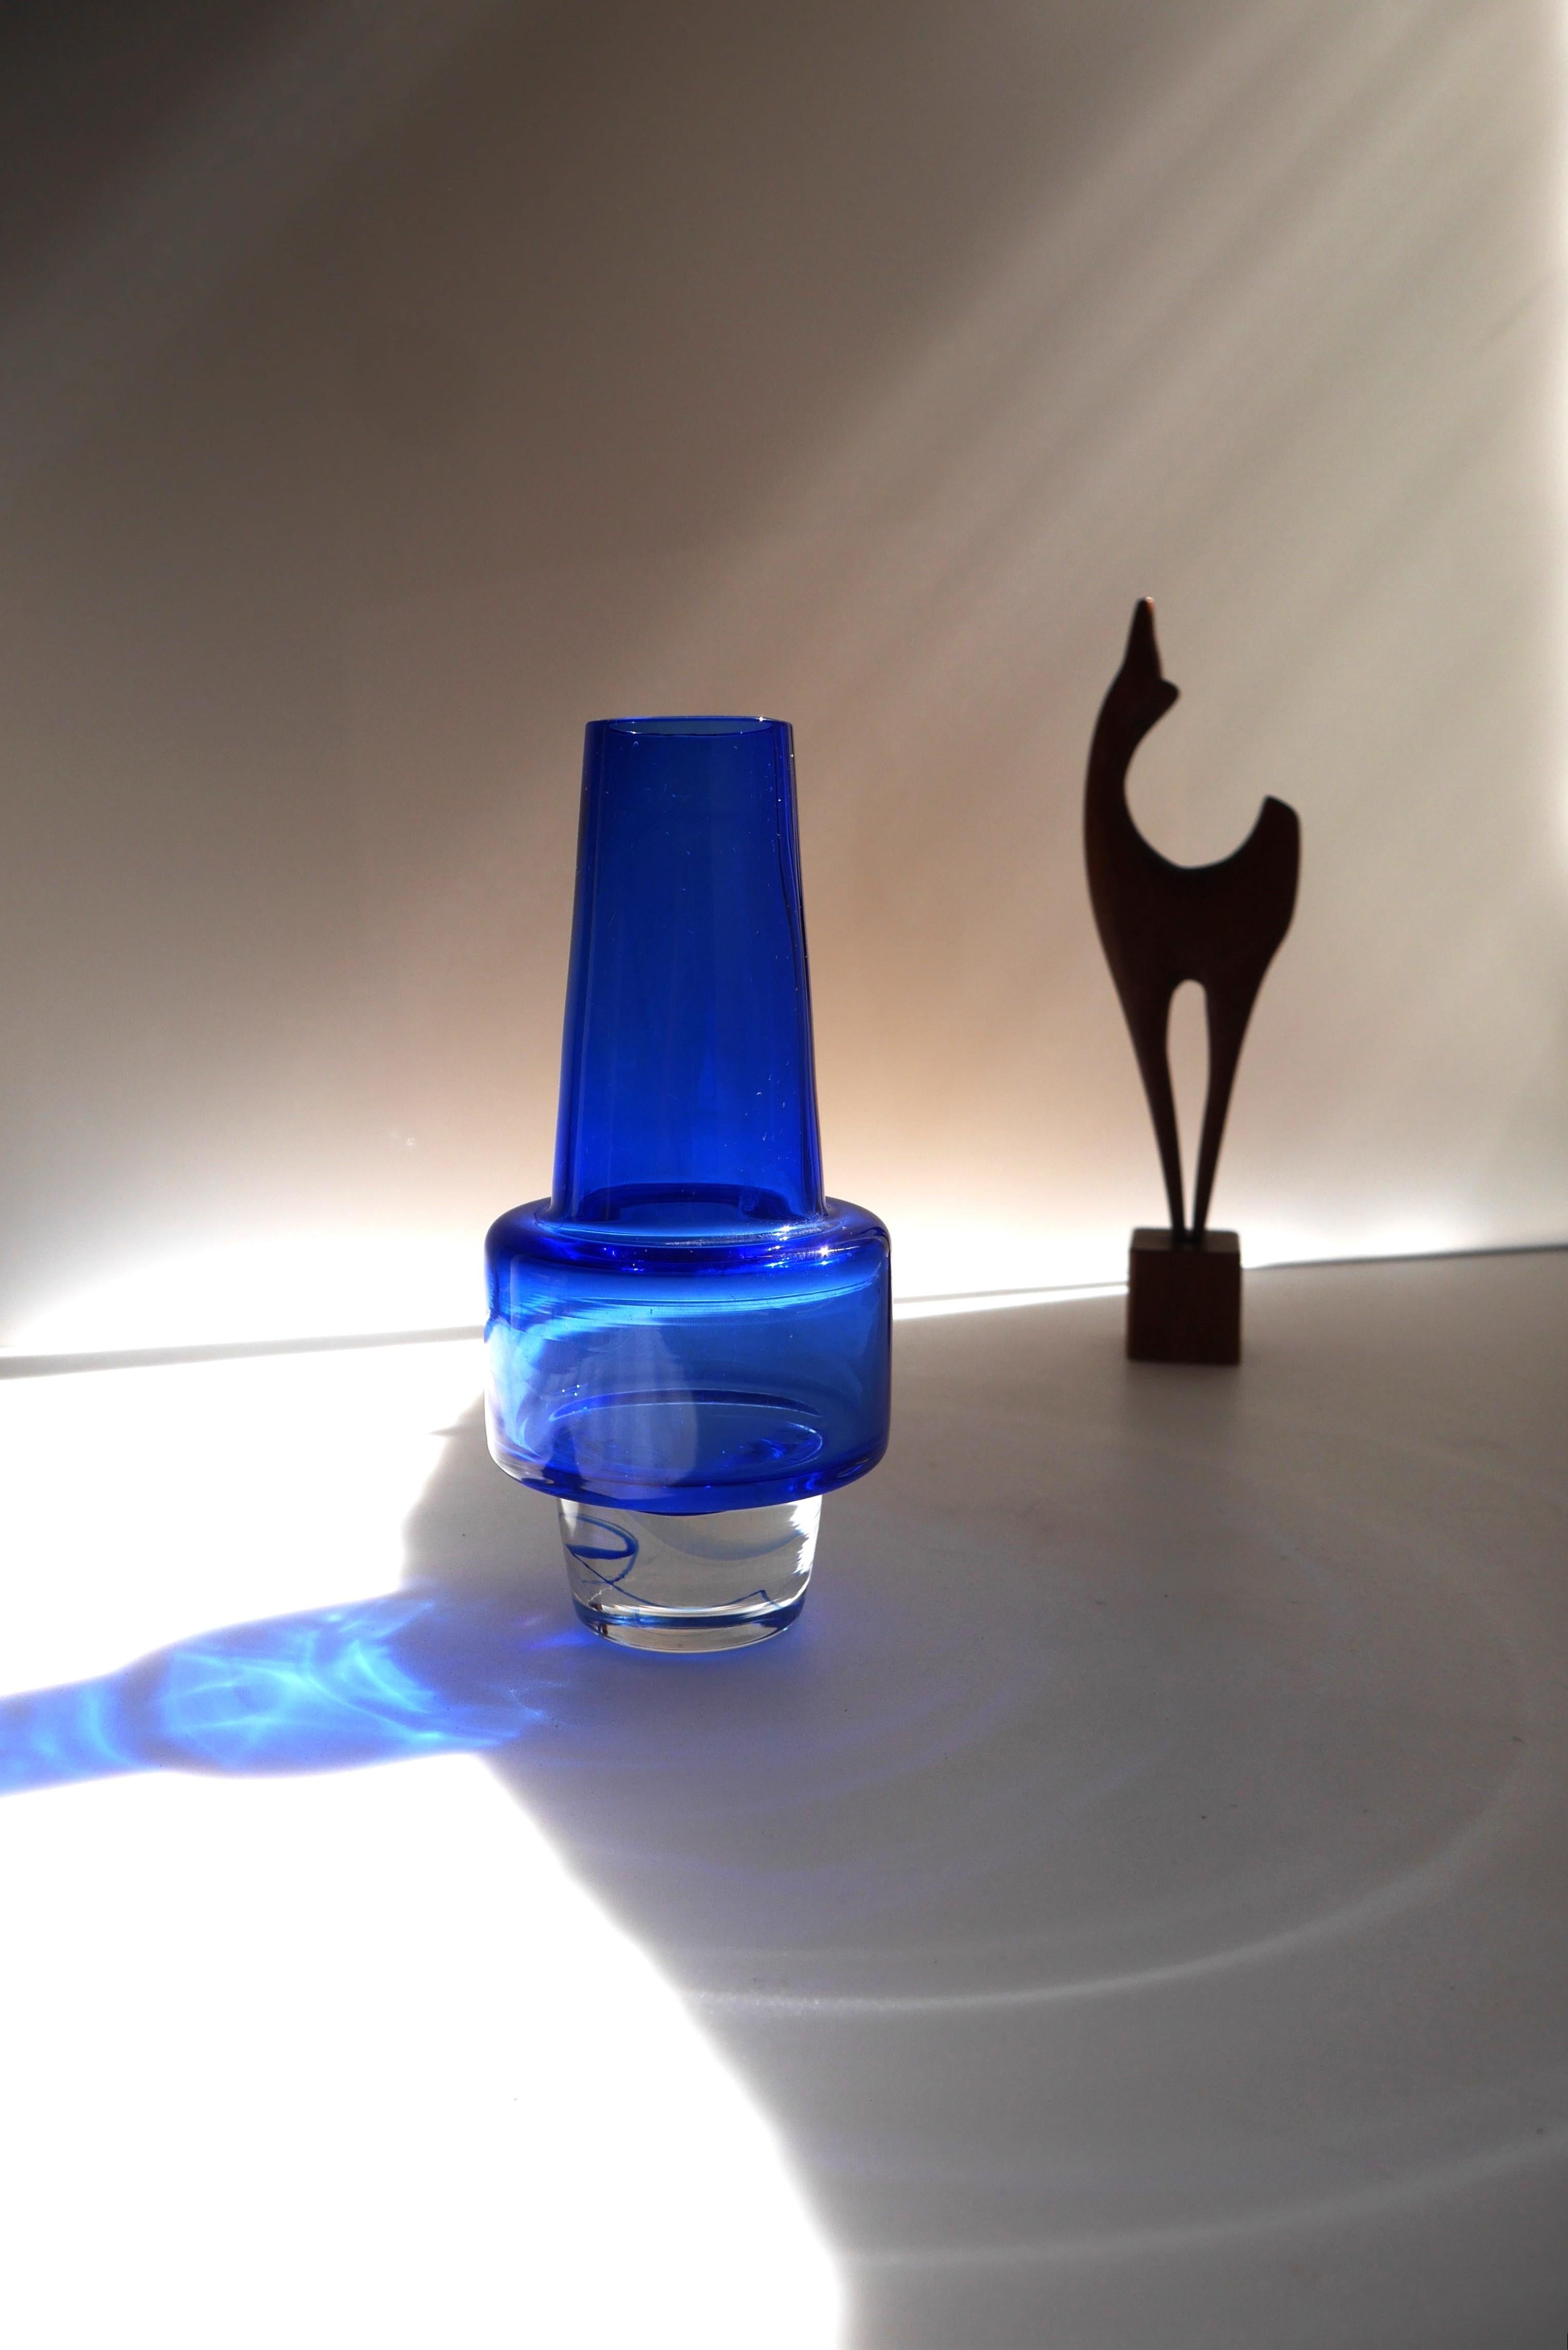 Un fantastique vase en verre bleu profond ou bleu indigo connu sous le nom de vase 